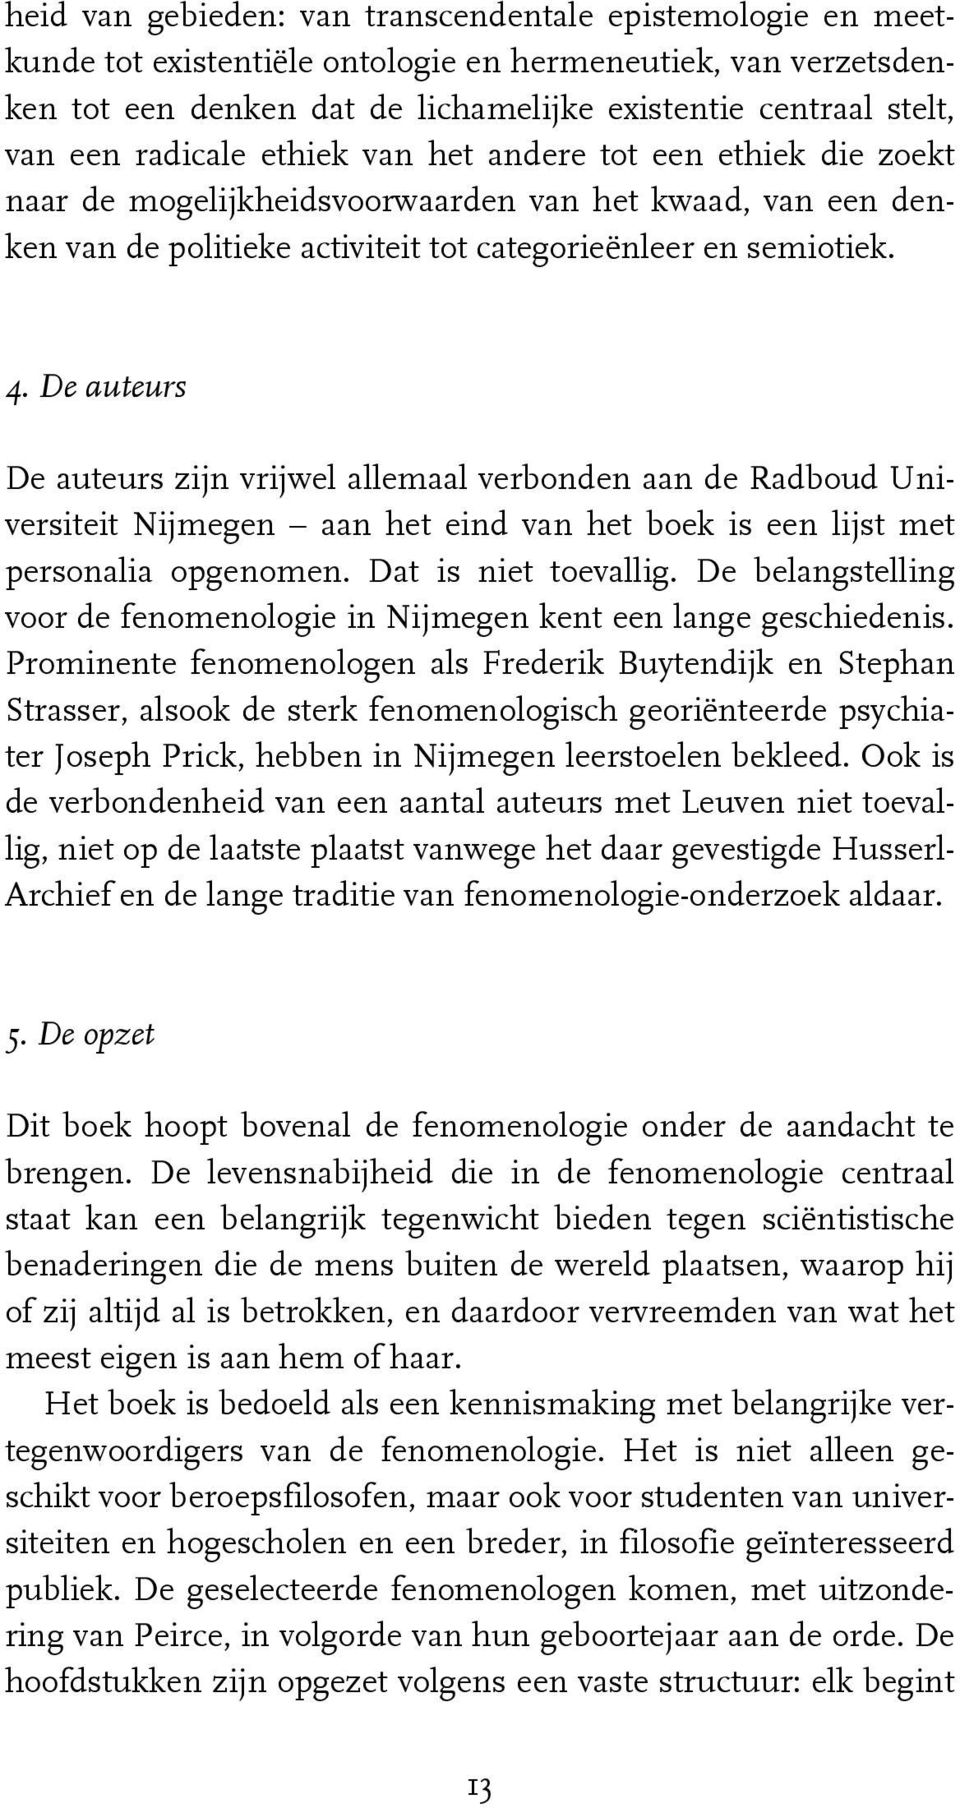 De auteurs De auteurs zijn vrijwel allemaal verbonden aan de Radboud Universiteit Nijmegen aan het eind van het boek is een lijst met personalia opgenomen. Dat is niet toevallig.